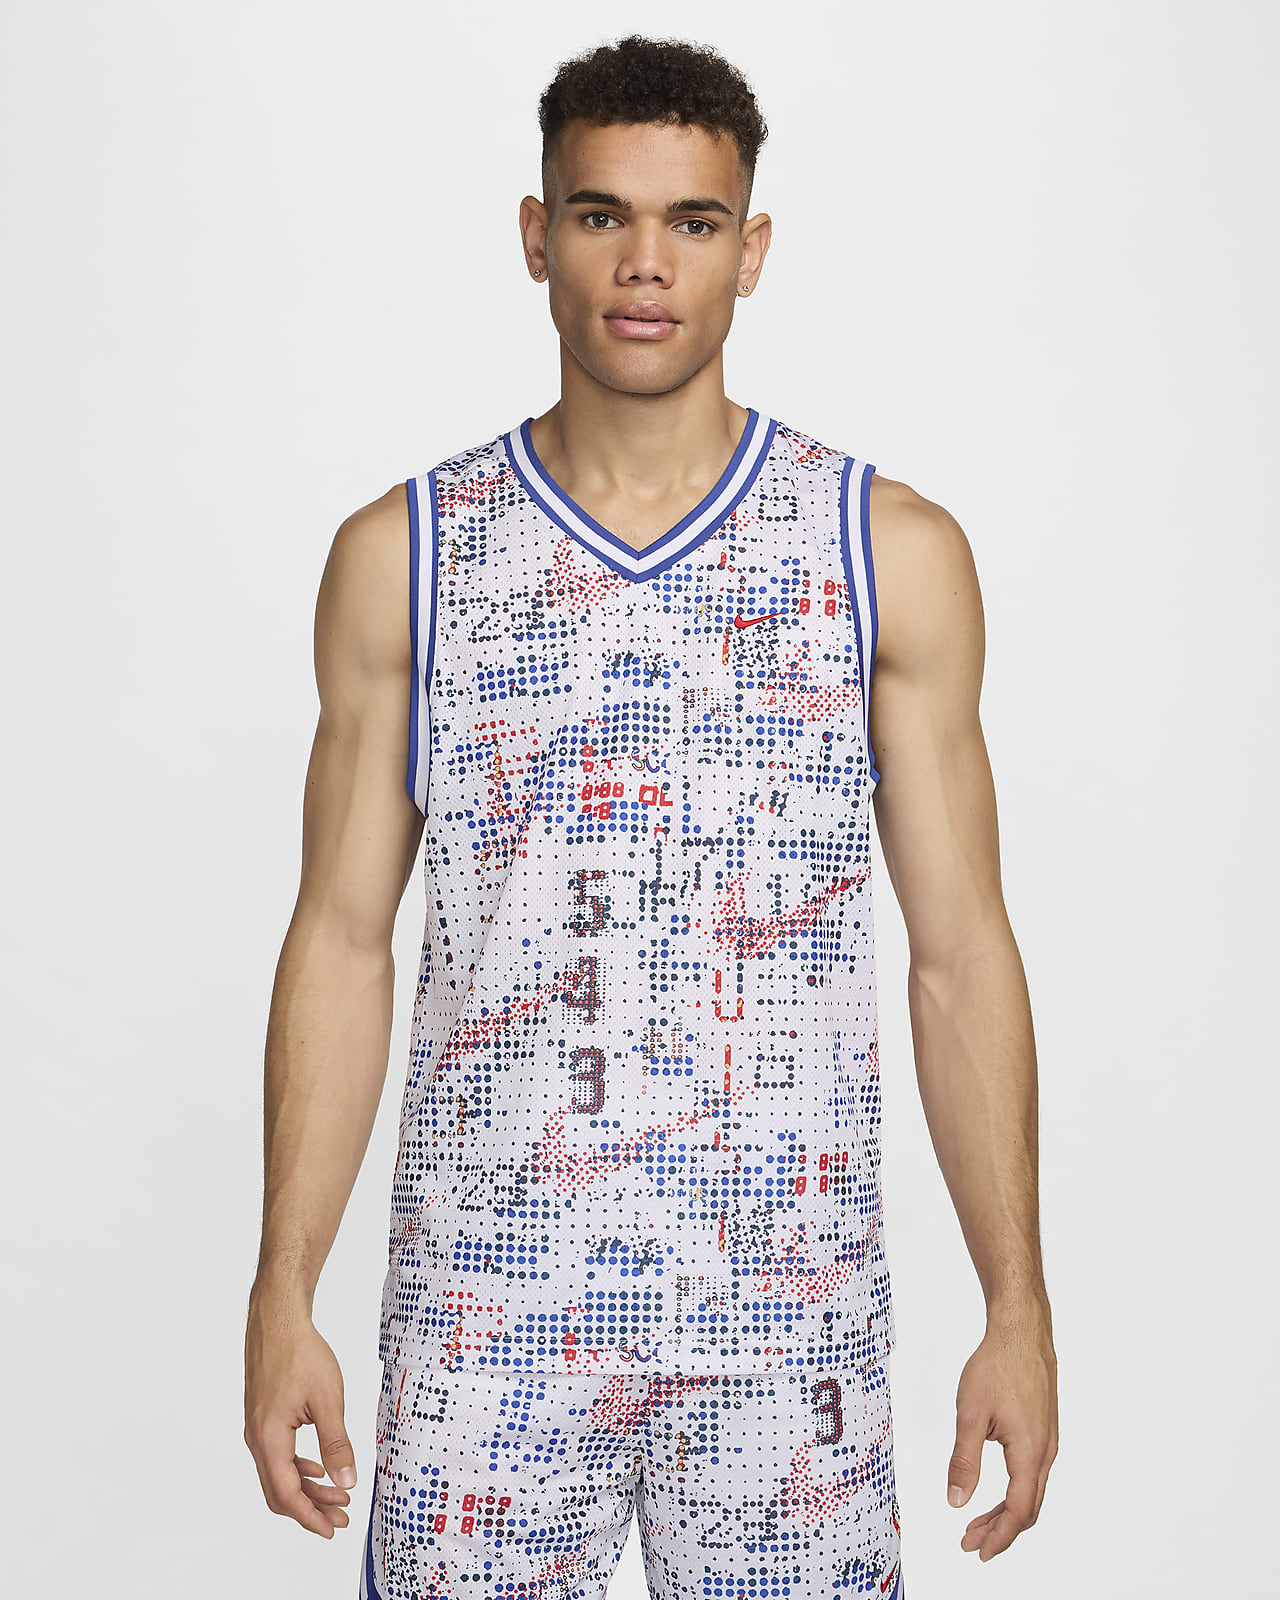 Pánský basketbalový dres Nike Dri-FIT DNA